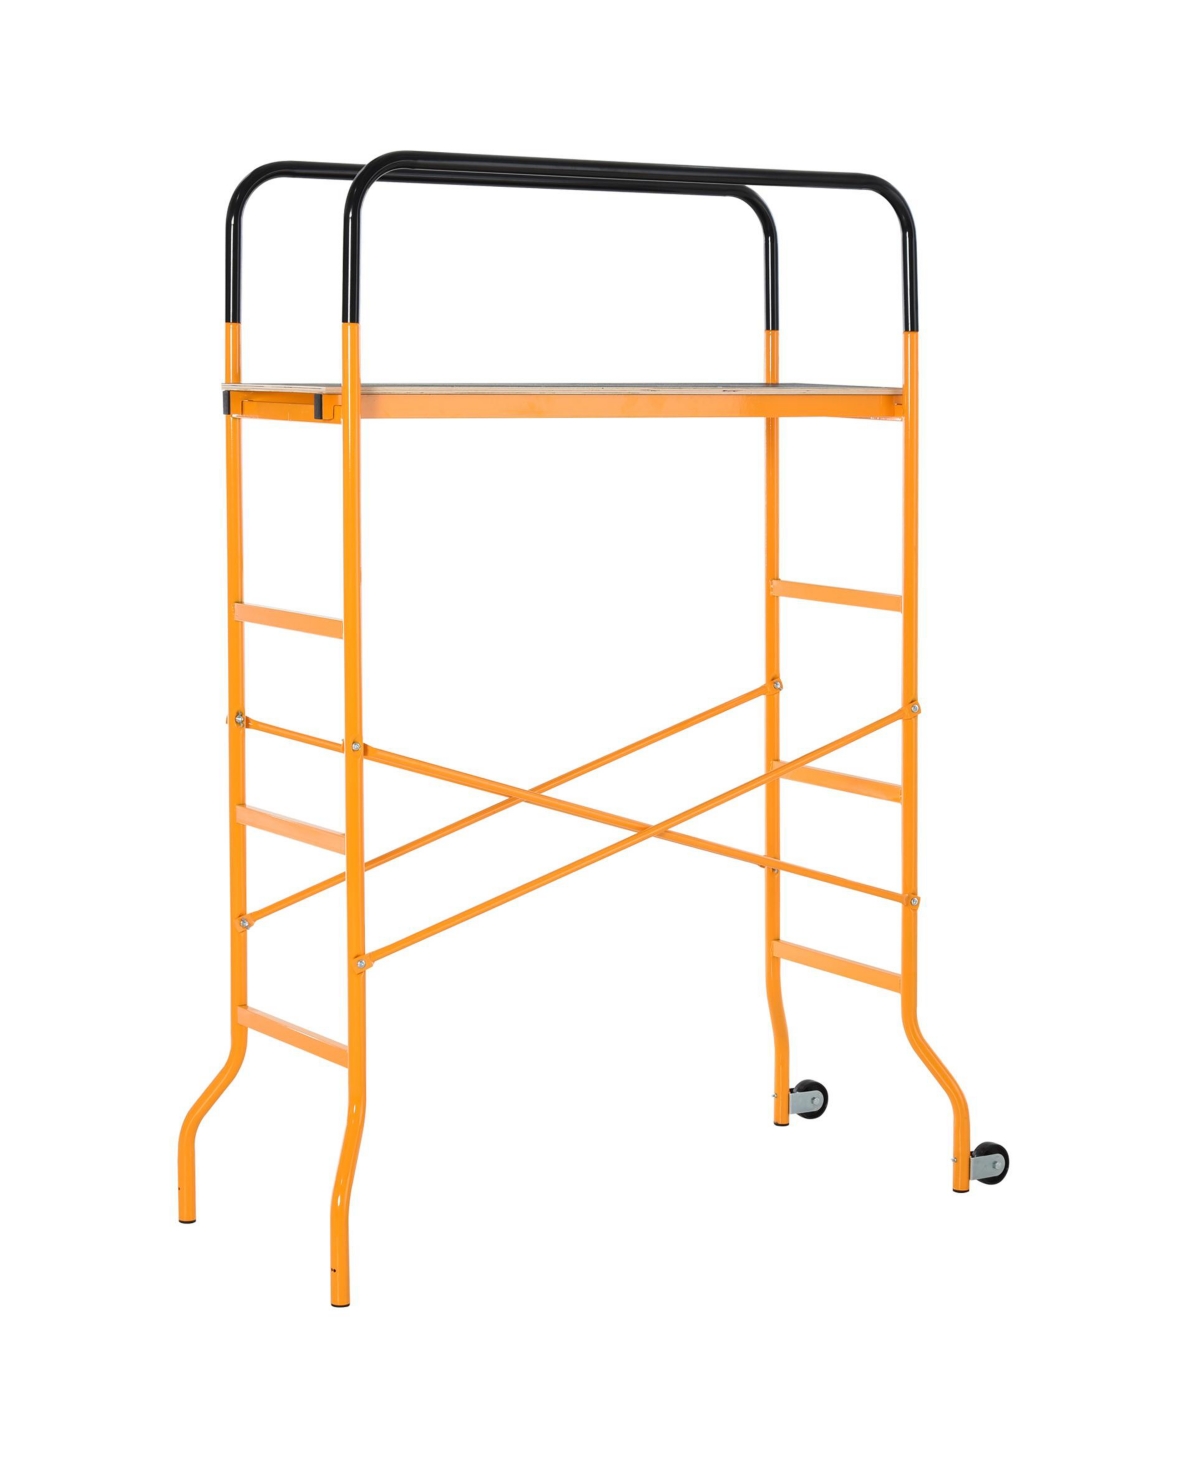 Steel Work Platform 4-Step Ladder Indoor Decoration w/2 Wheels - Black